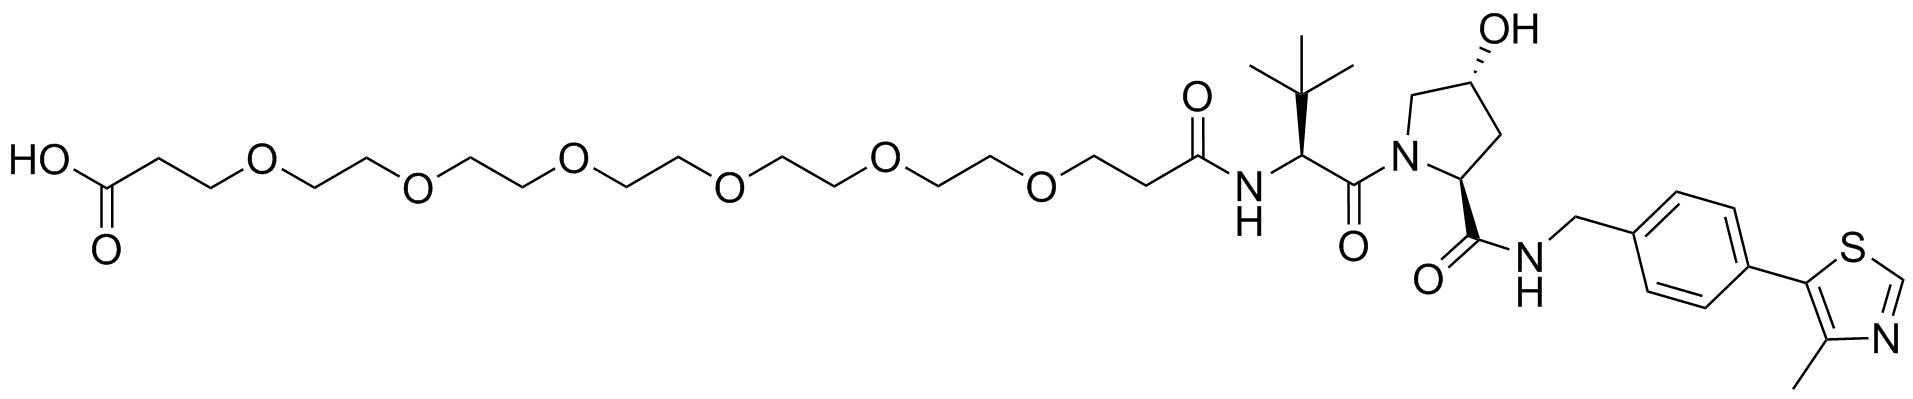 (S,R,S)-AHPC-PEG6-acid